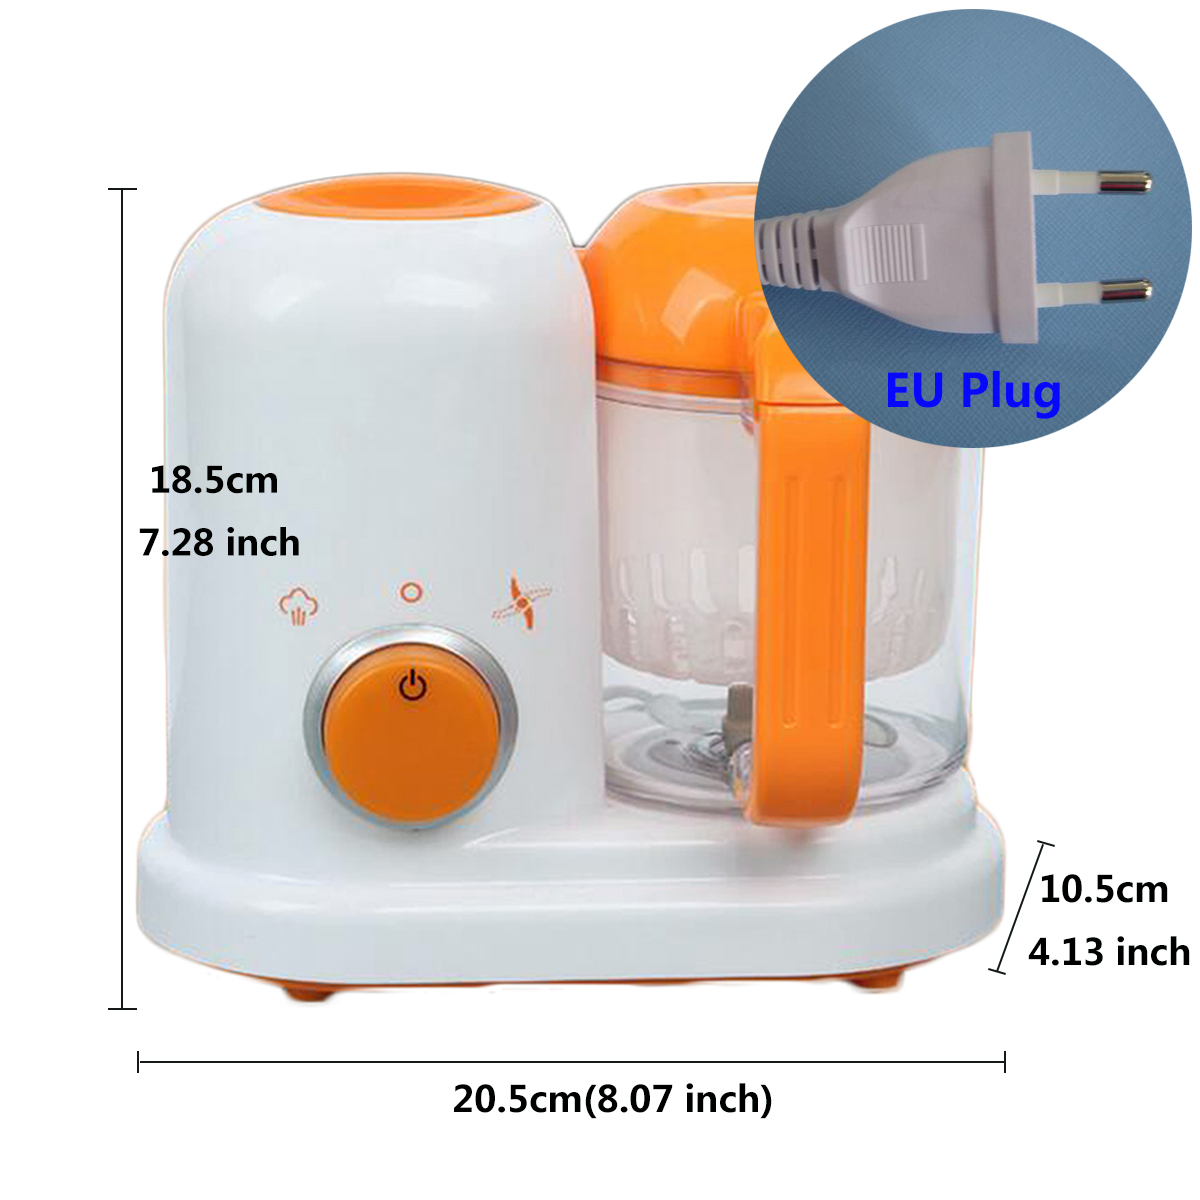 Electric-Baby-Food-Maker-Processor-Toddler-Blender-Safe-Healthy-Steamer-Processor-BPA-Free-1361401